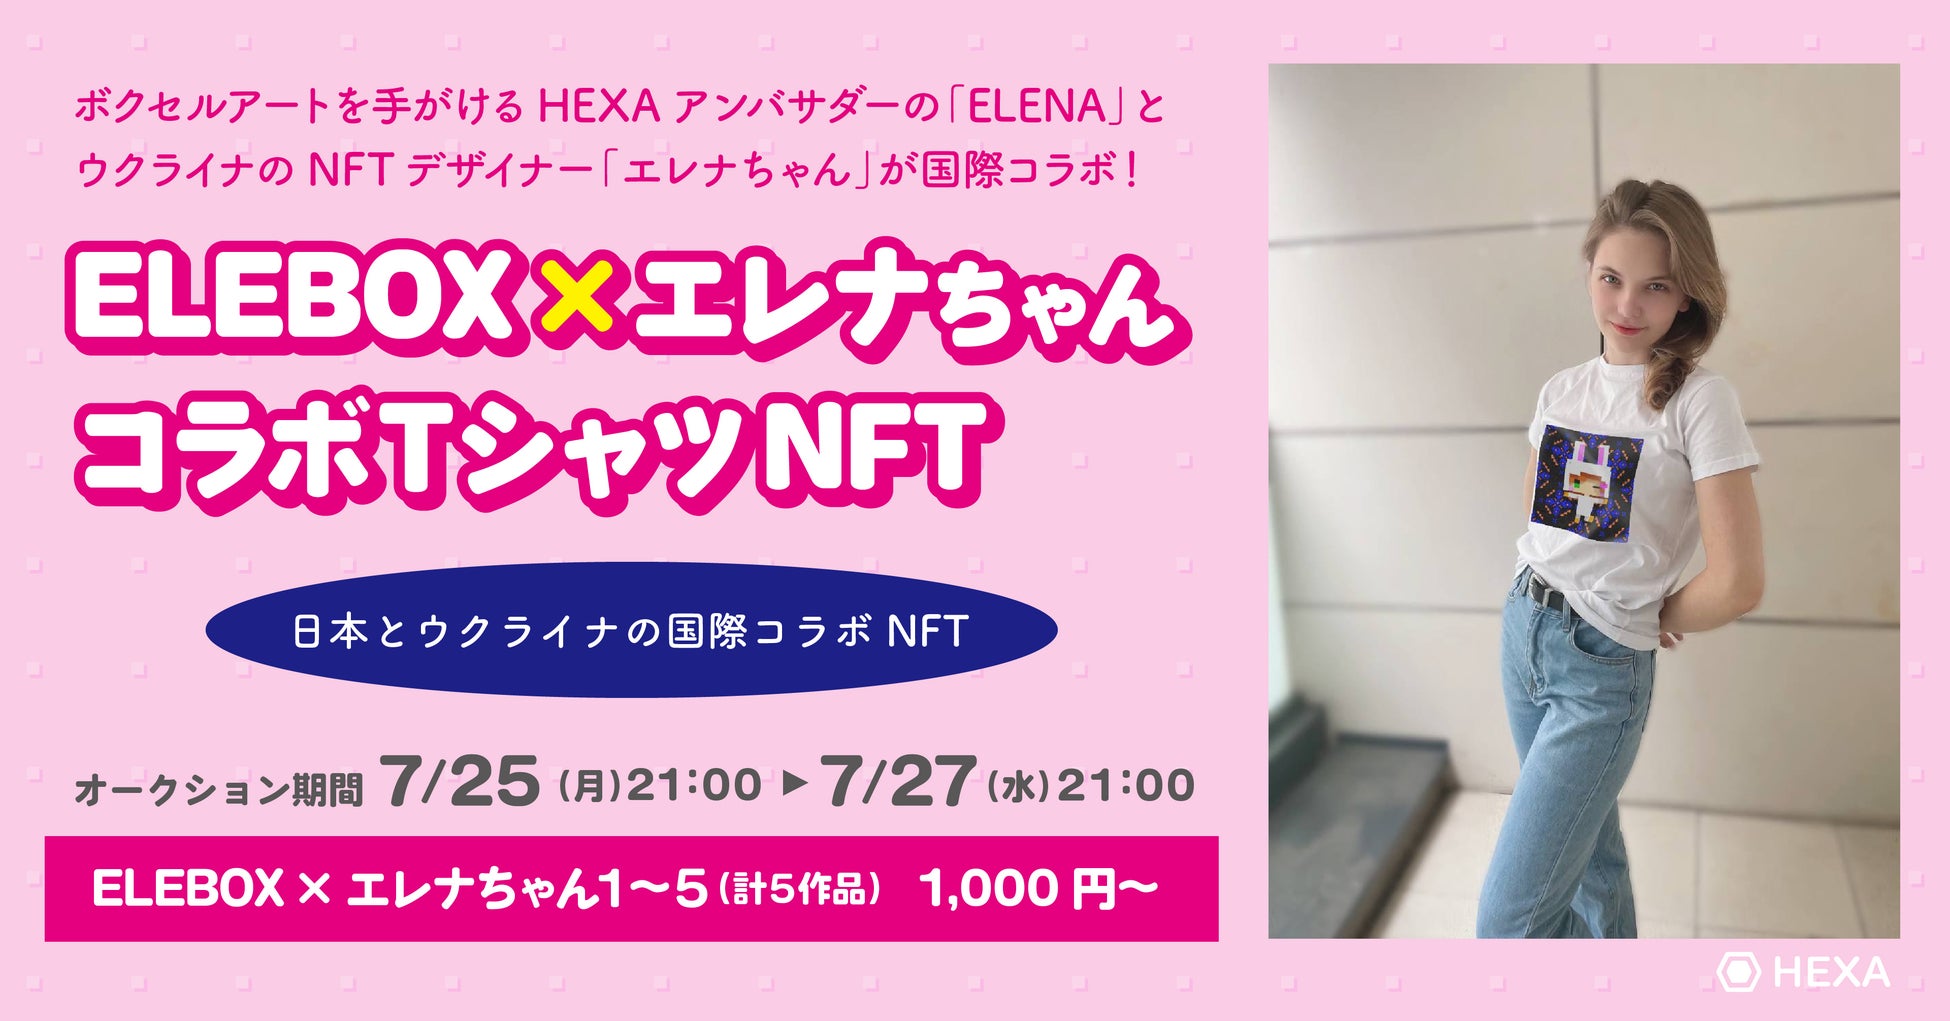 「Bitfan」がNFTサービスの提供開始を決定、第一弾として今田美桜オフィシャルファンクラブの初オフラインイベントで記念NFTを発行！